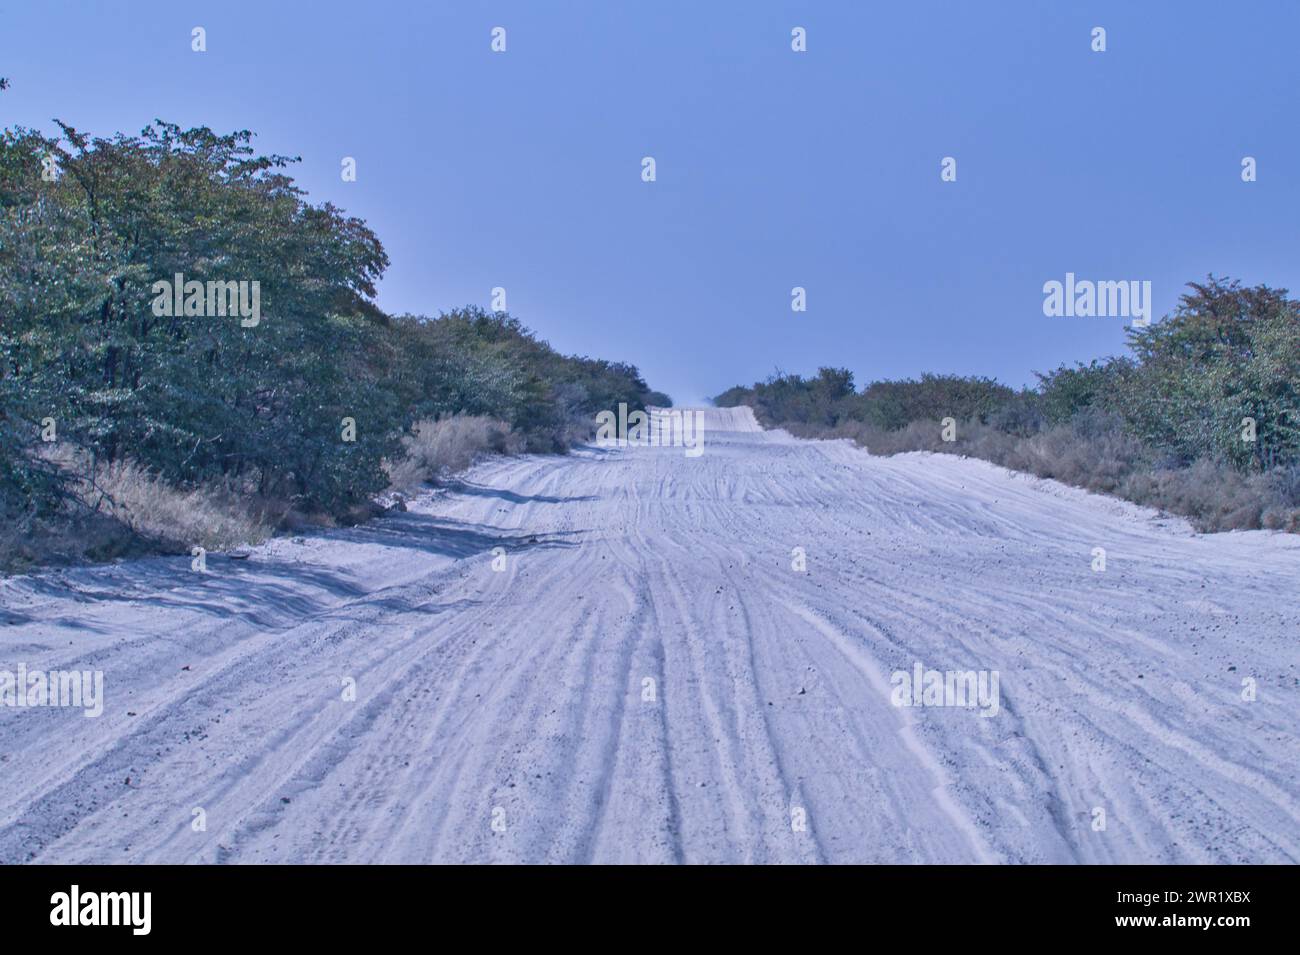 Una vista a lunga distanza di una strada sabbiosa del Botswana senza veicoli. I cingoli del veicolo sono visibili nella sabbia soffice. Foto Stock